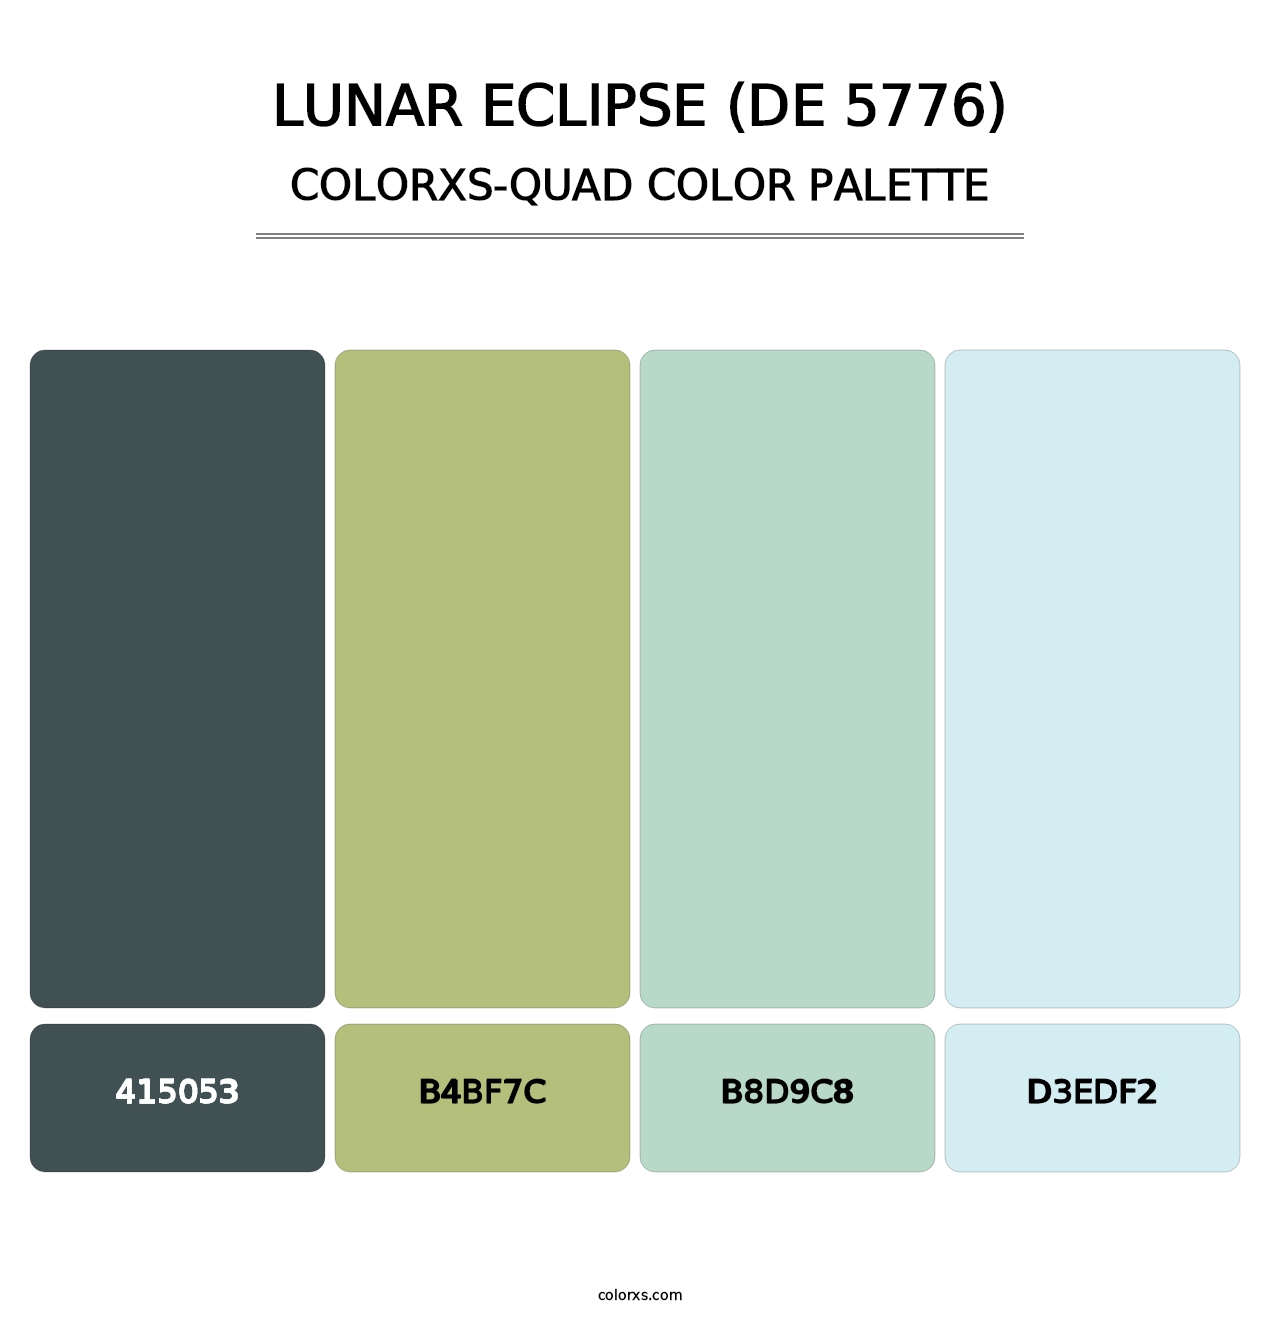 Lunar Eclipse (DE 5776) - Colorxs Quad Palette